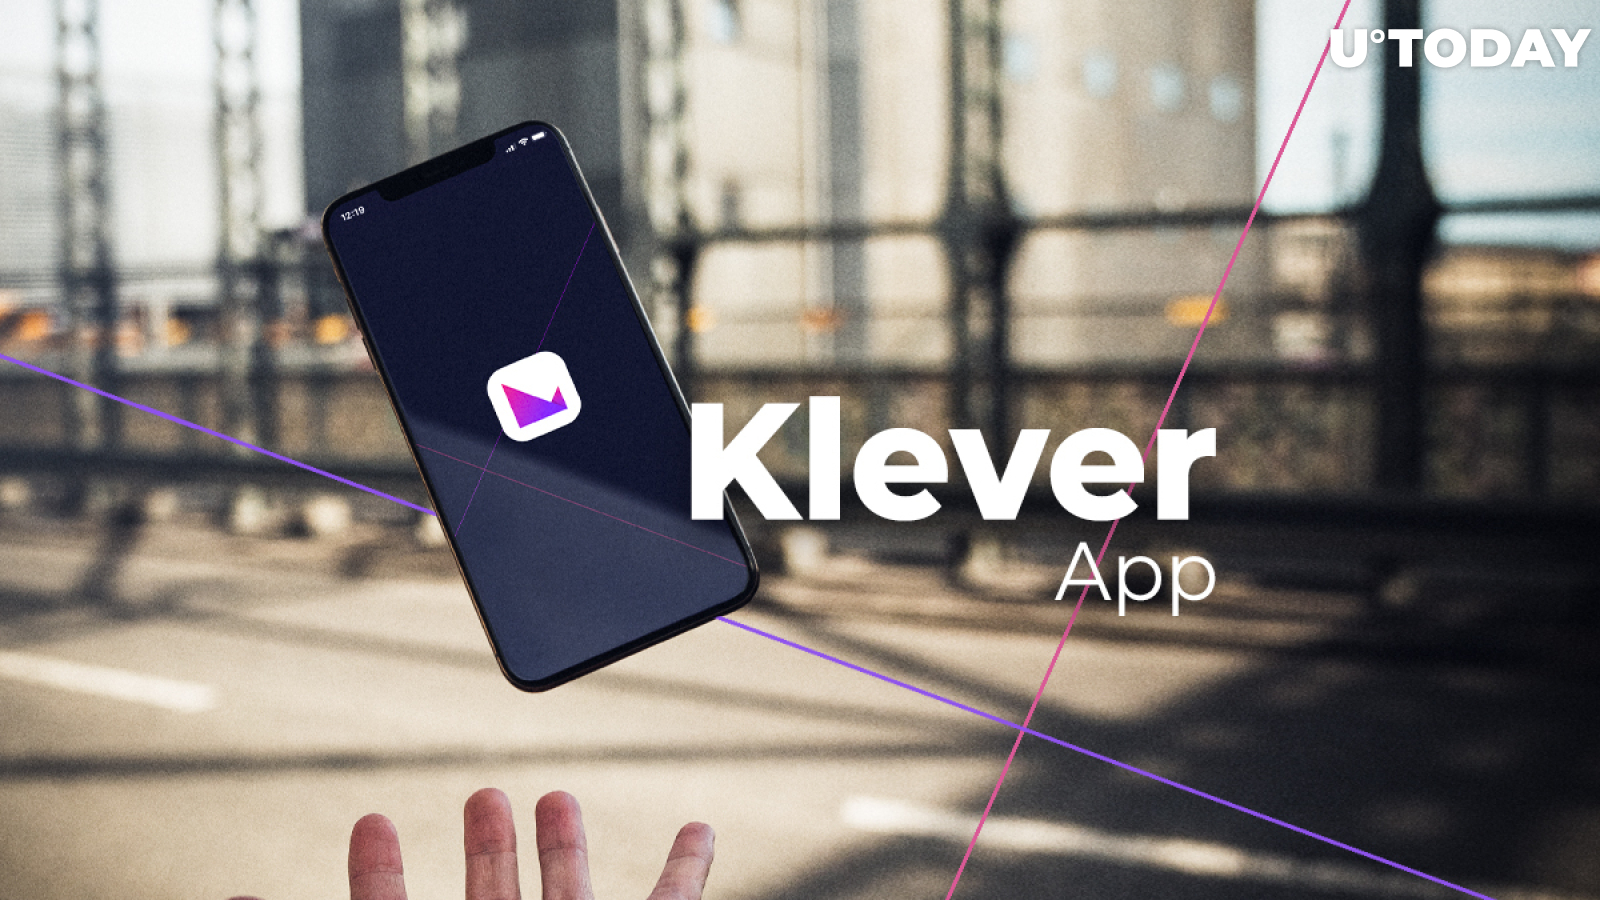 TronWallet Kicks Off In-App Offering of Klever (KLV) Token Ahead of Klever App’s Launch 